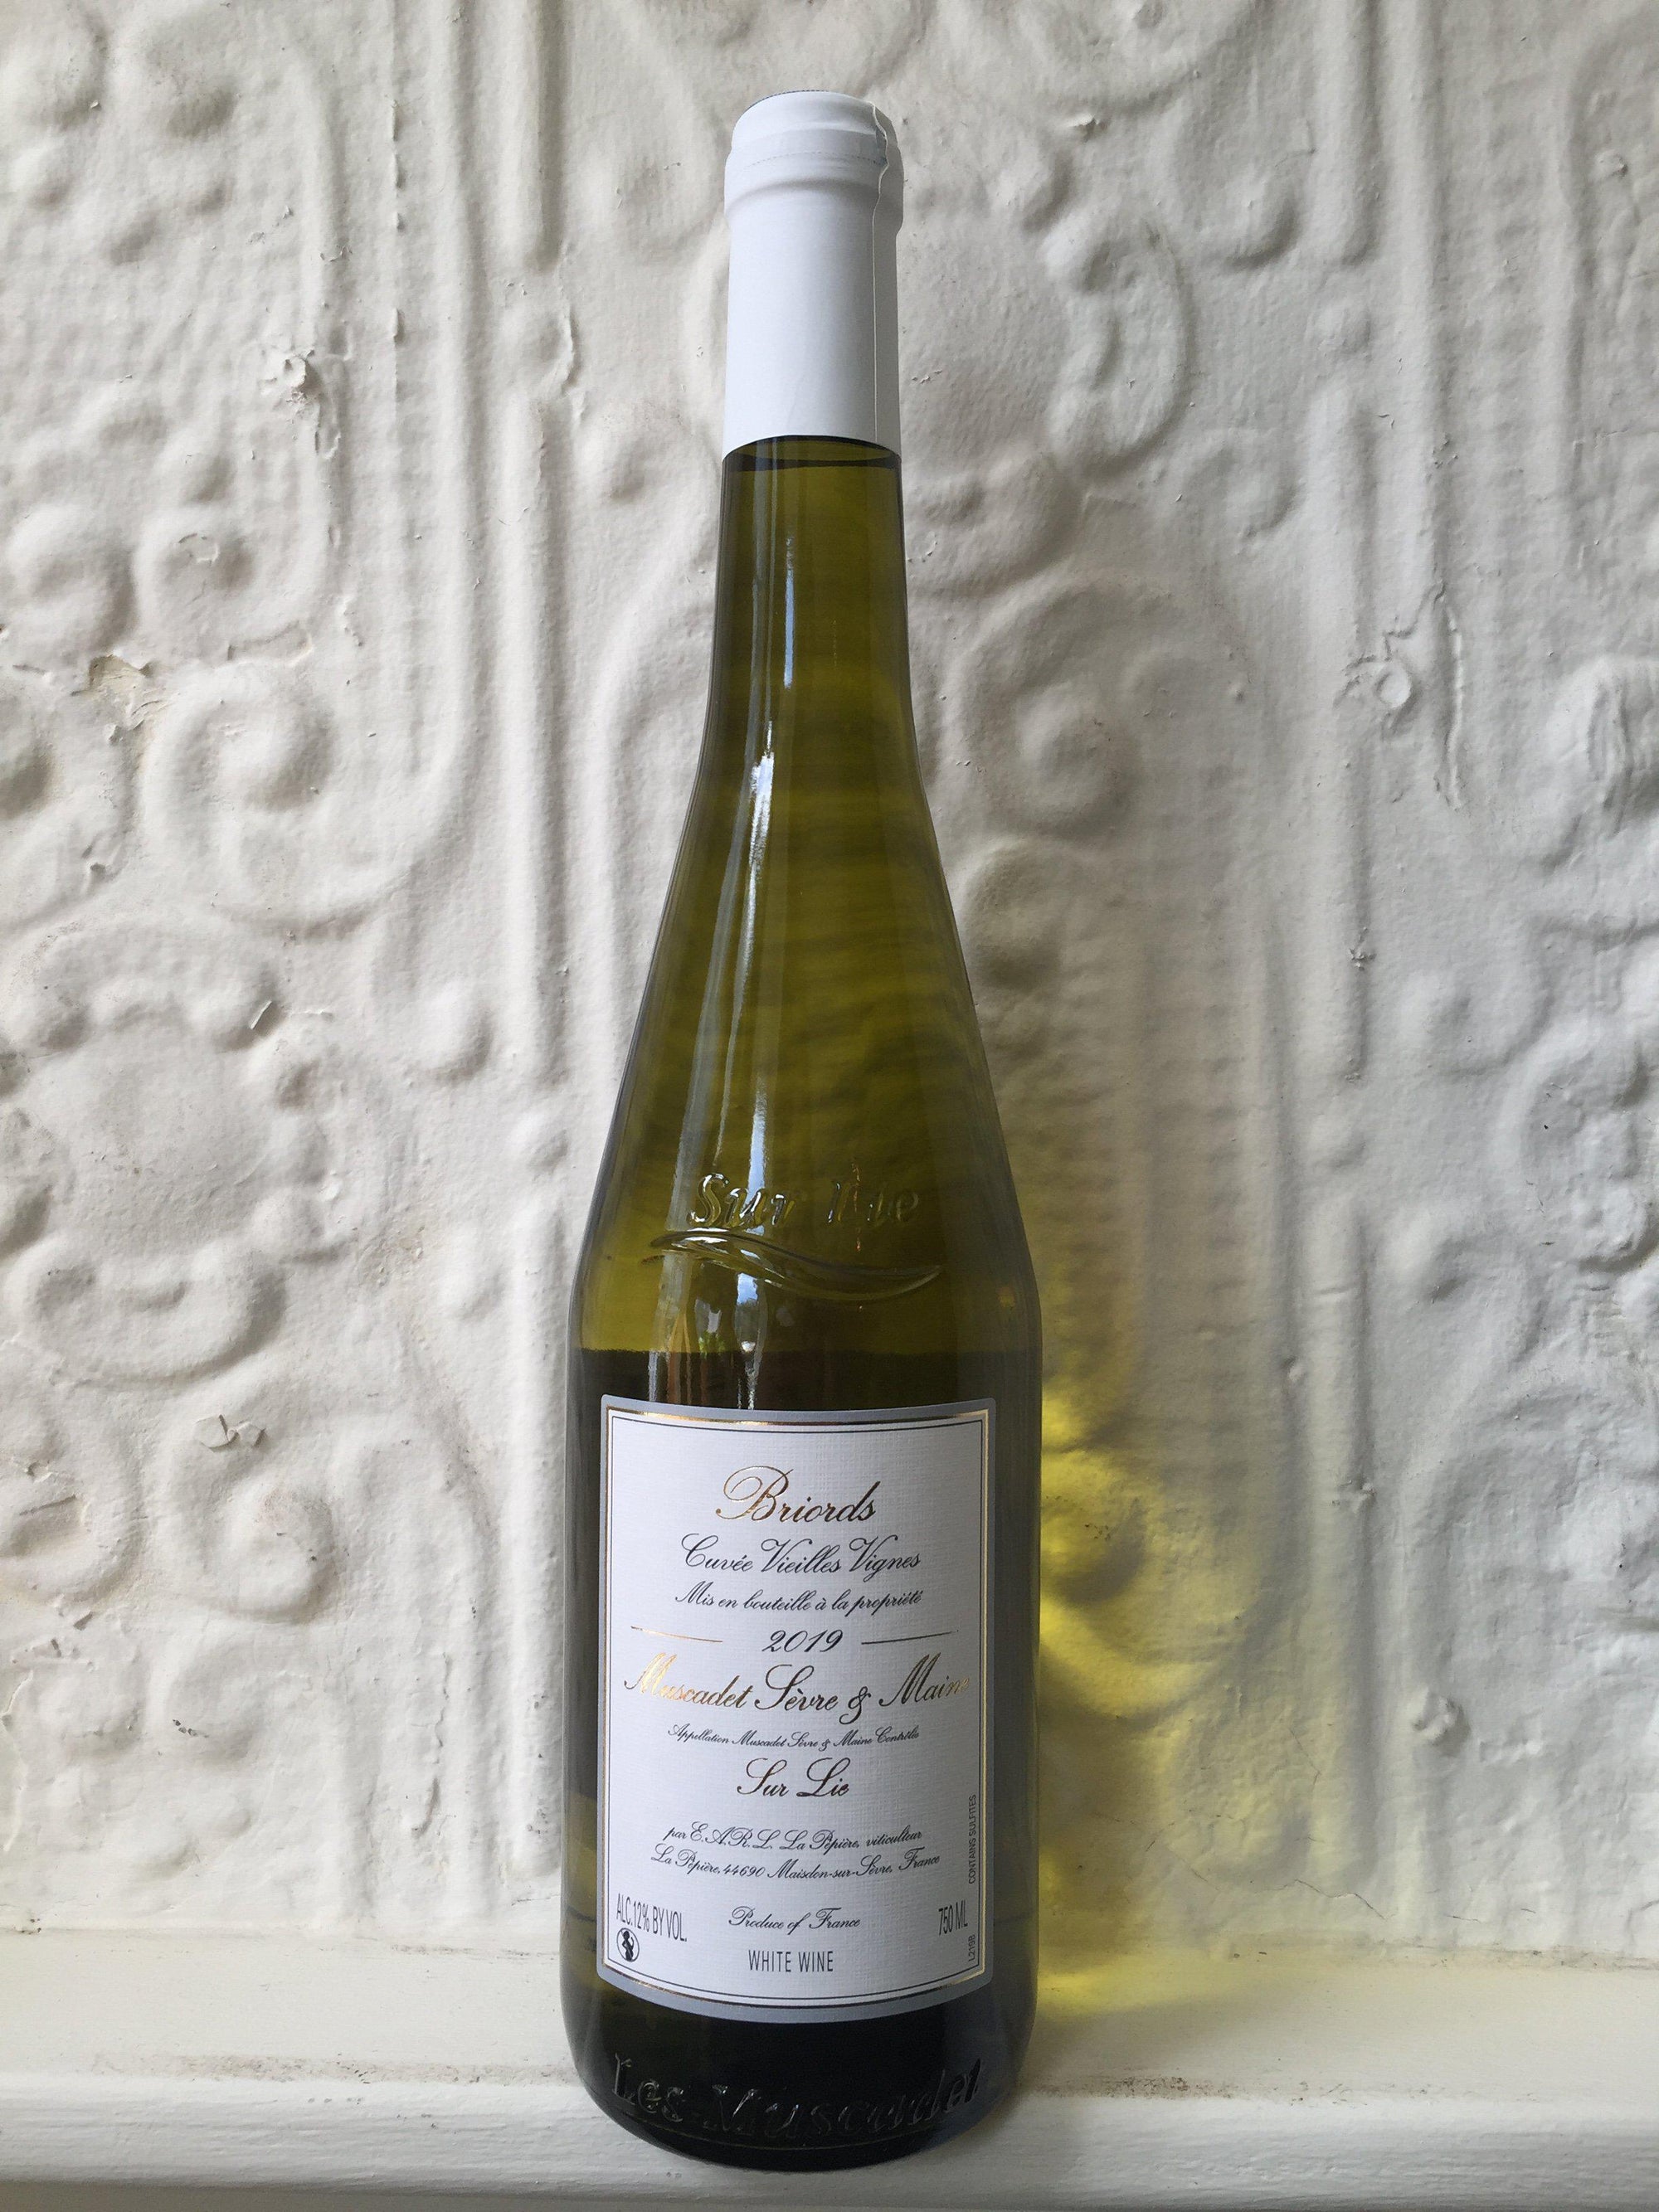 Muscadet "Clos des Briords", Domaine de la Pepiere 2019 (Loire, France)-Wine-Bibber & Bell